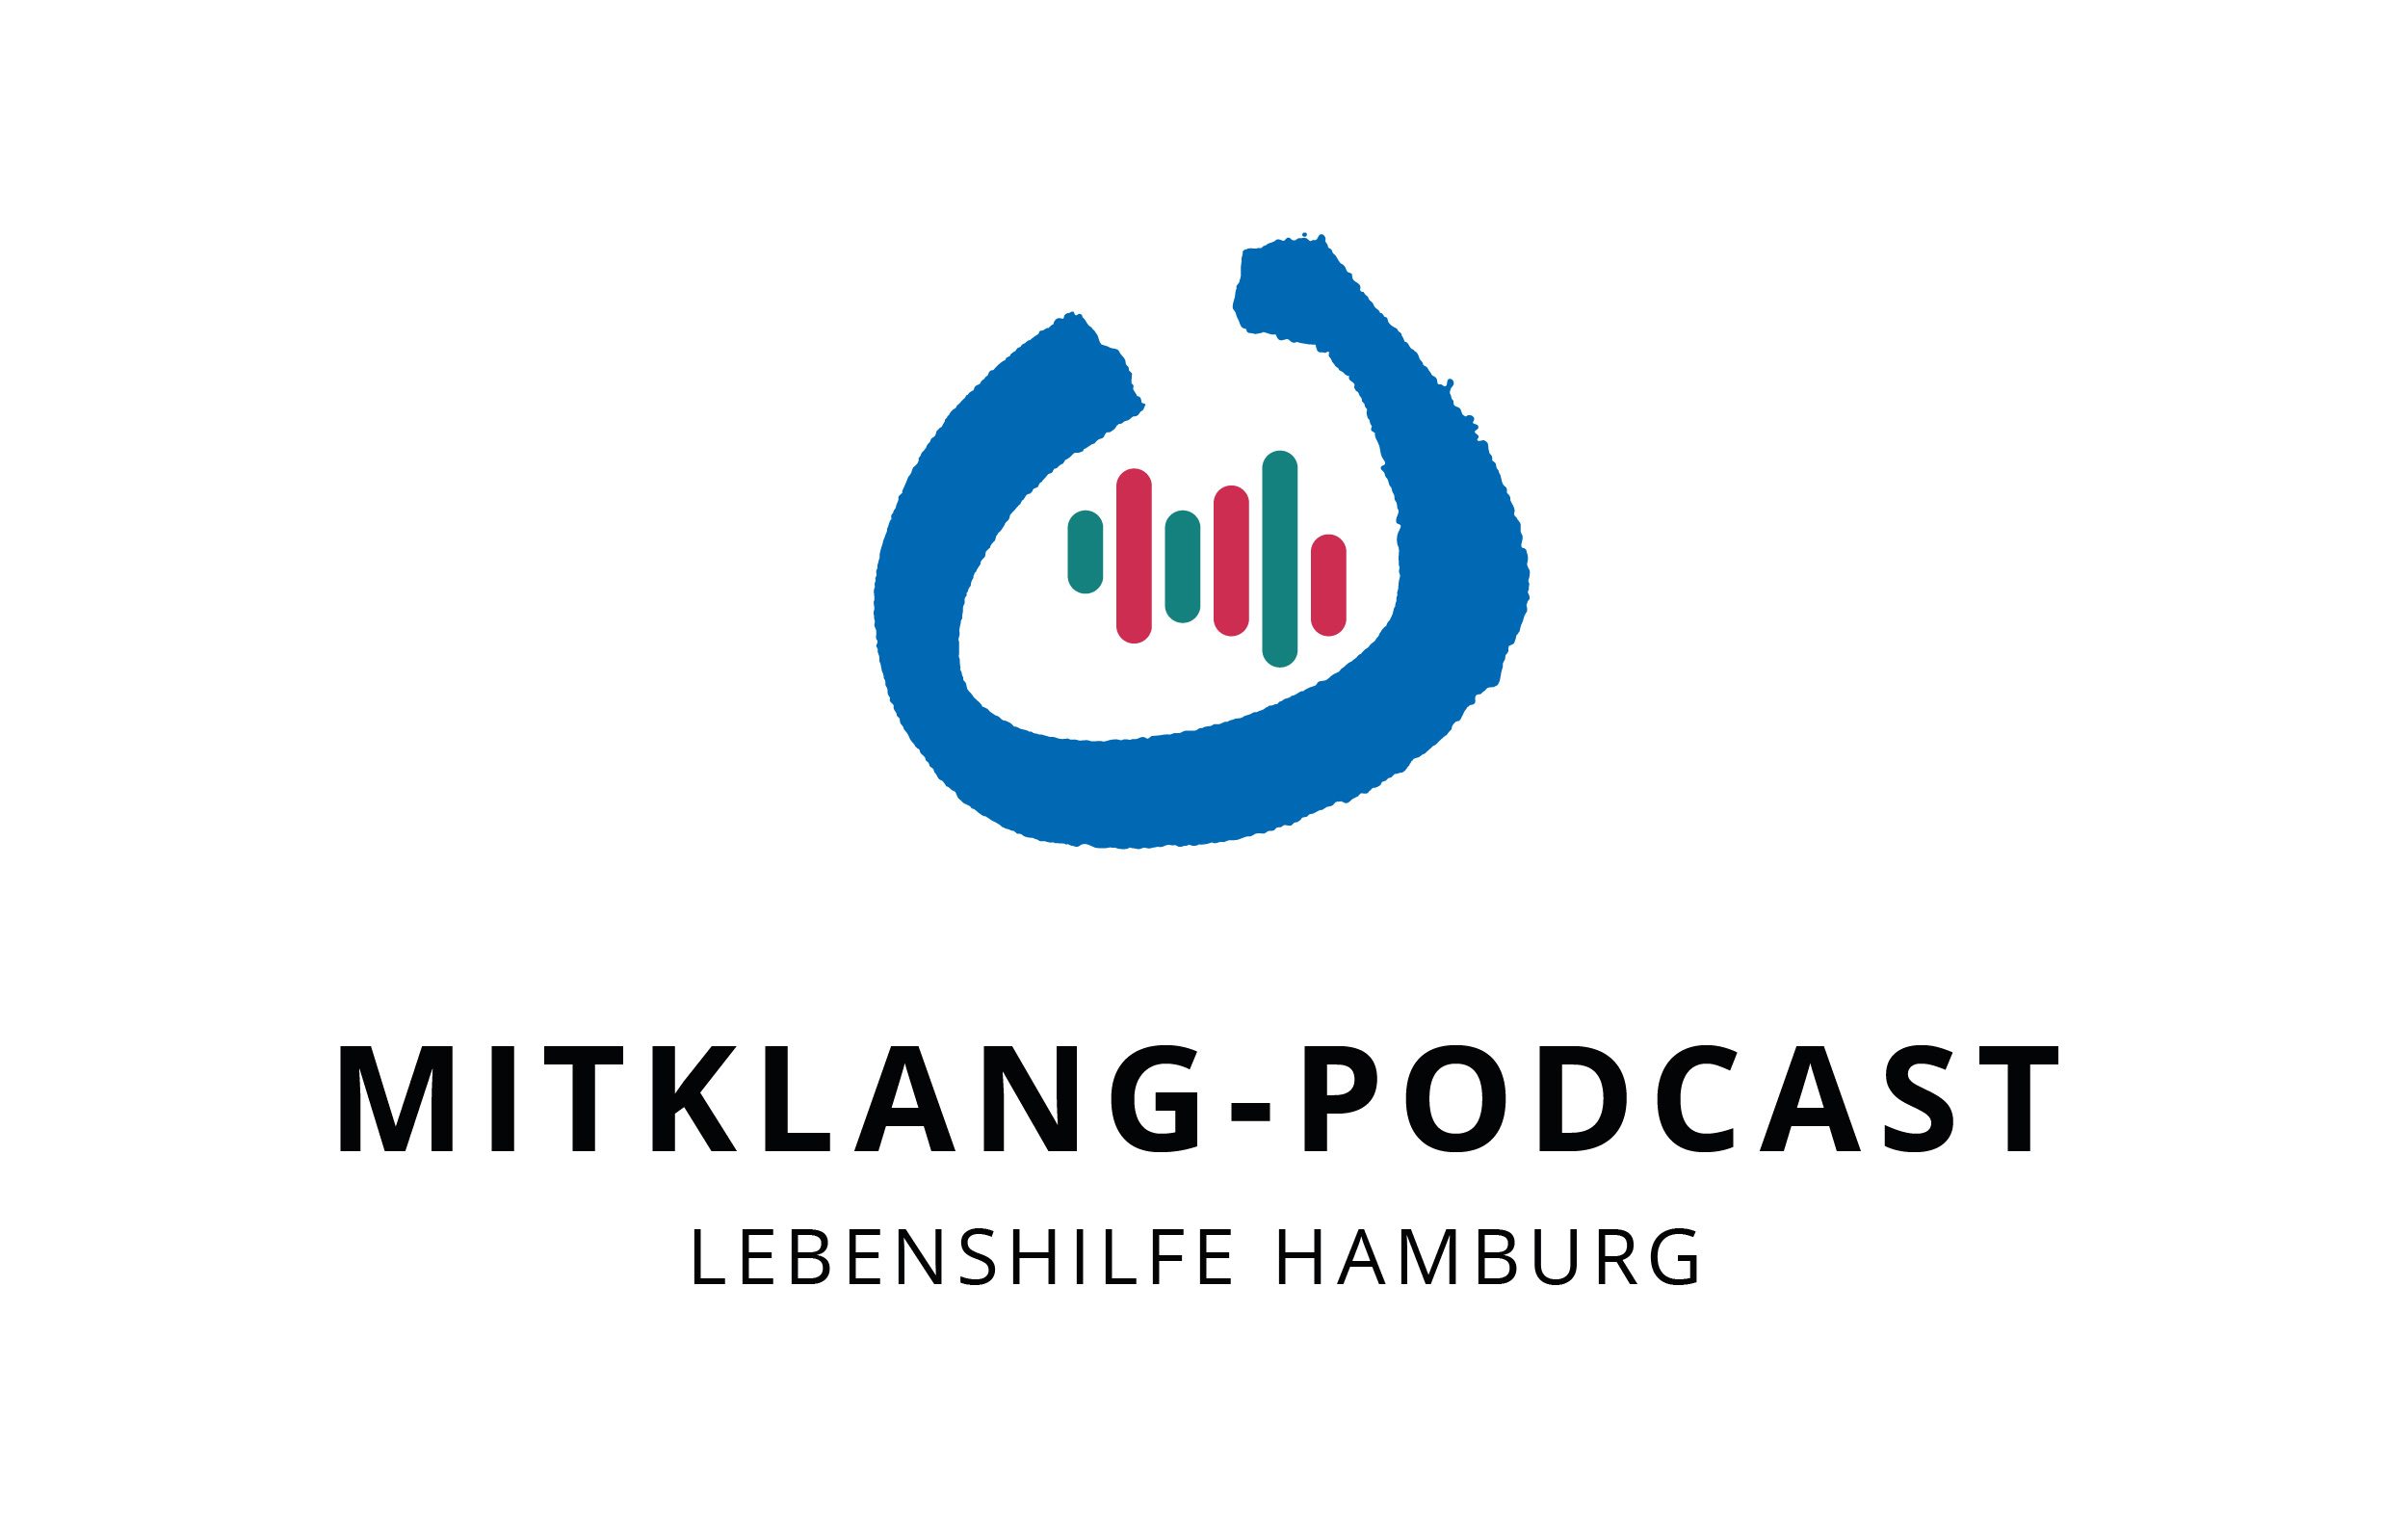 Logo vom Podcast Mitklang Lebenshilfe Hamburg: Blauer etwas offener Kreis mit Tonfrequenz darin